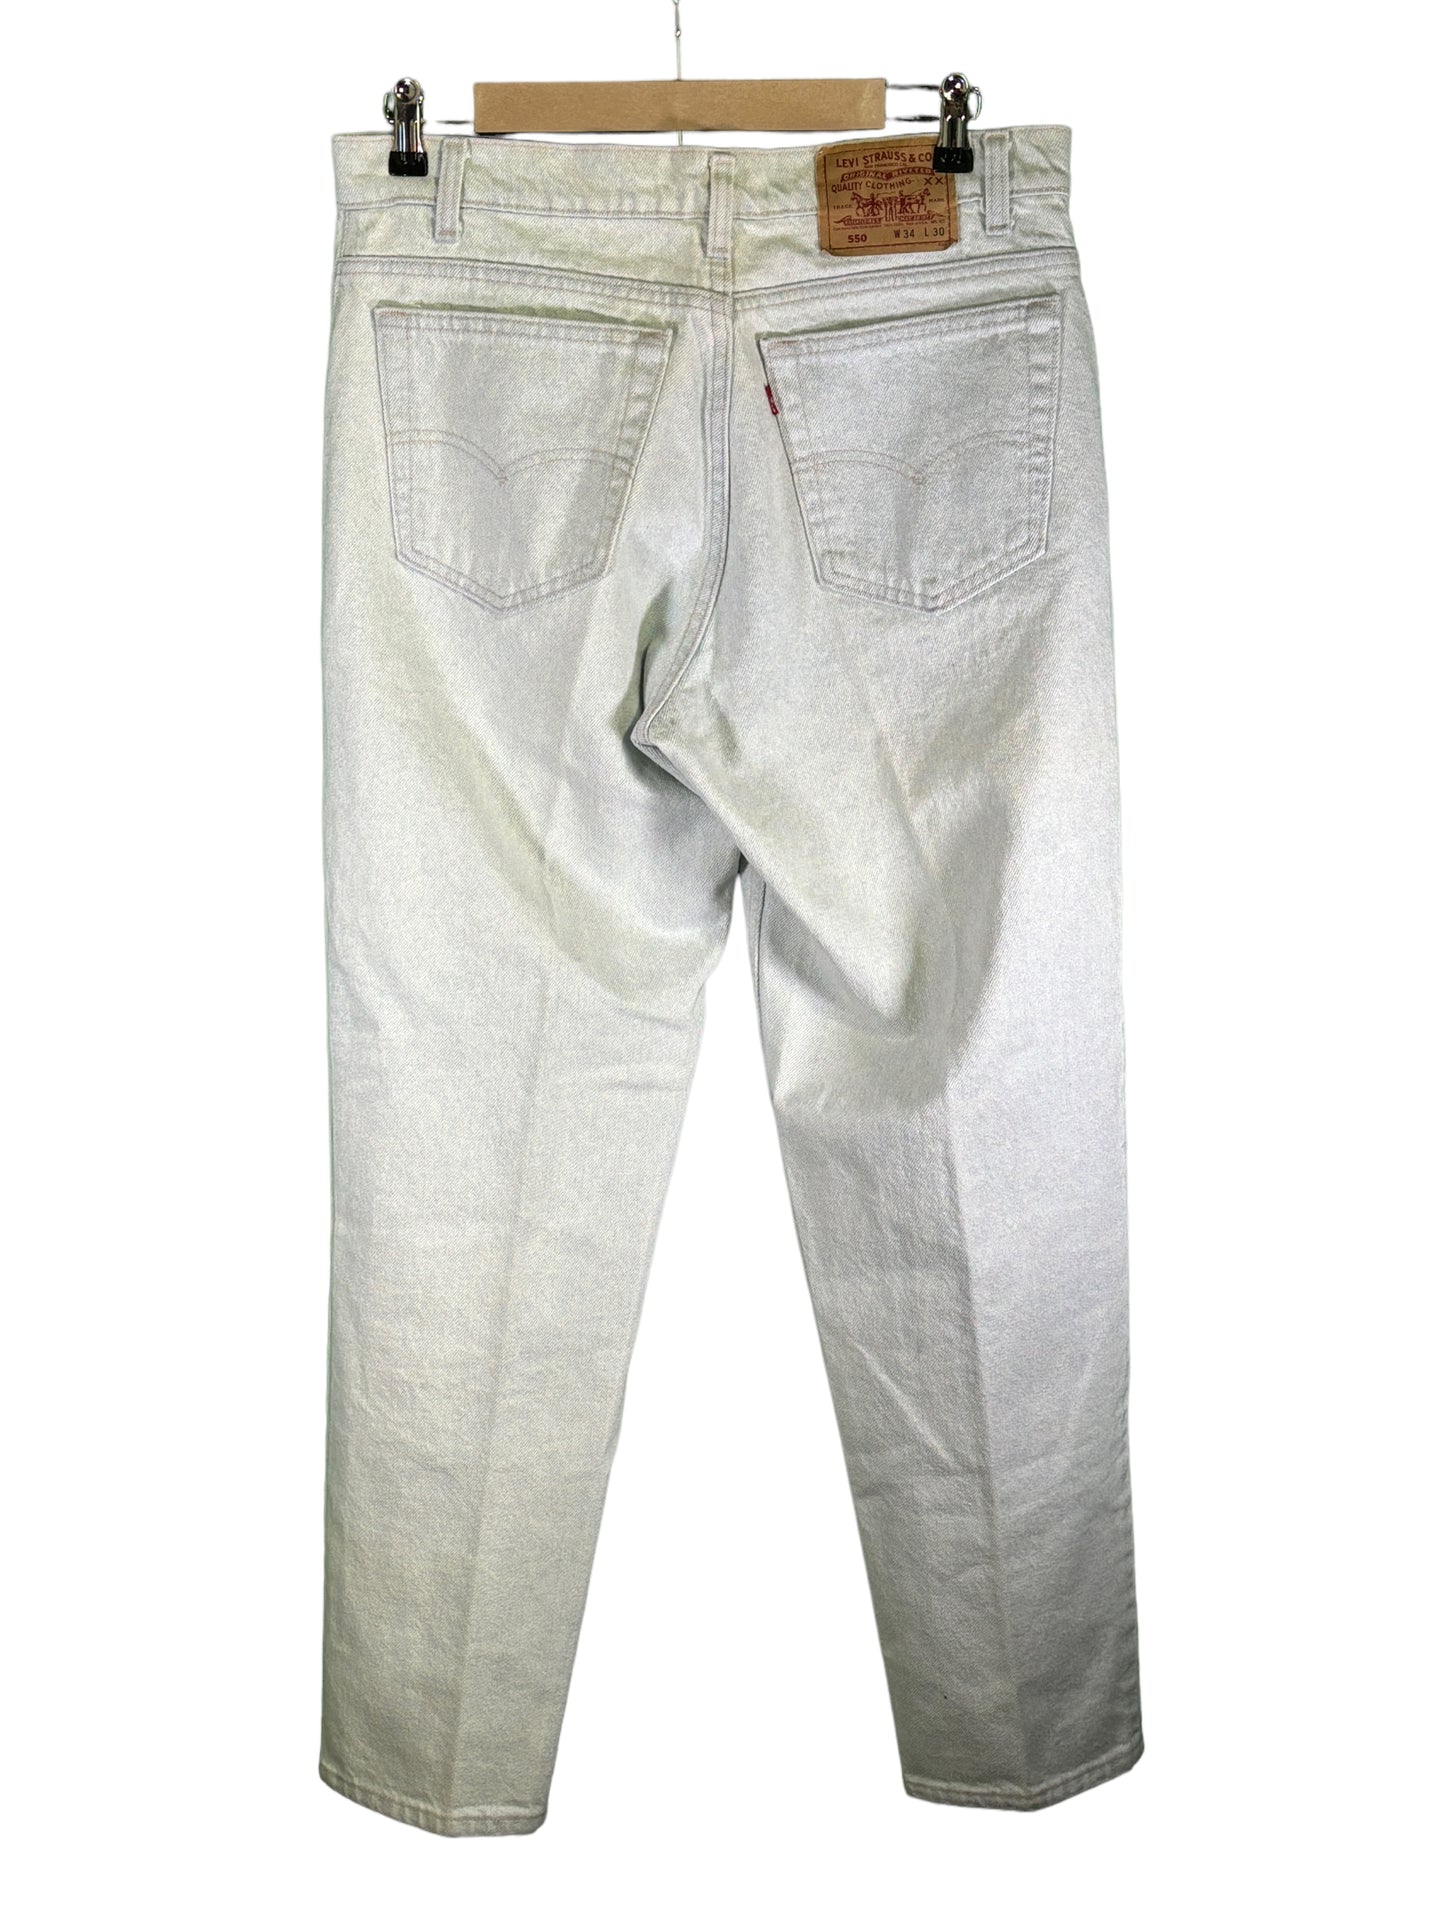 Vintage Levi Made in USA 550 Acid Wash Light Denim Jeans Size 33x30